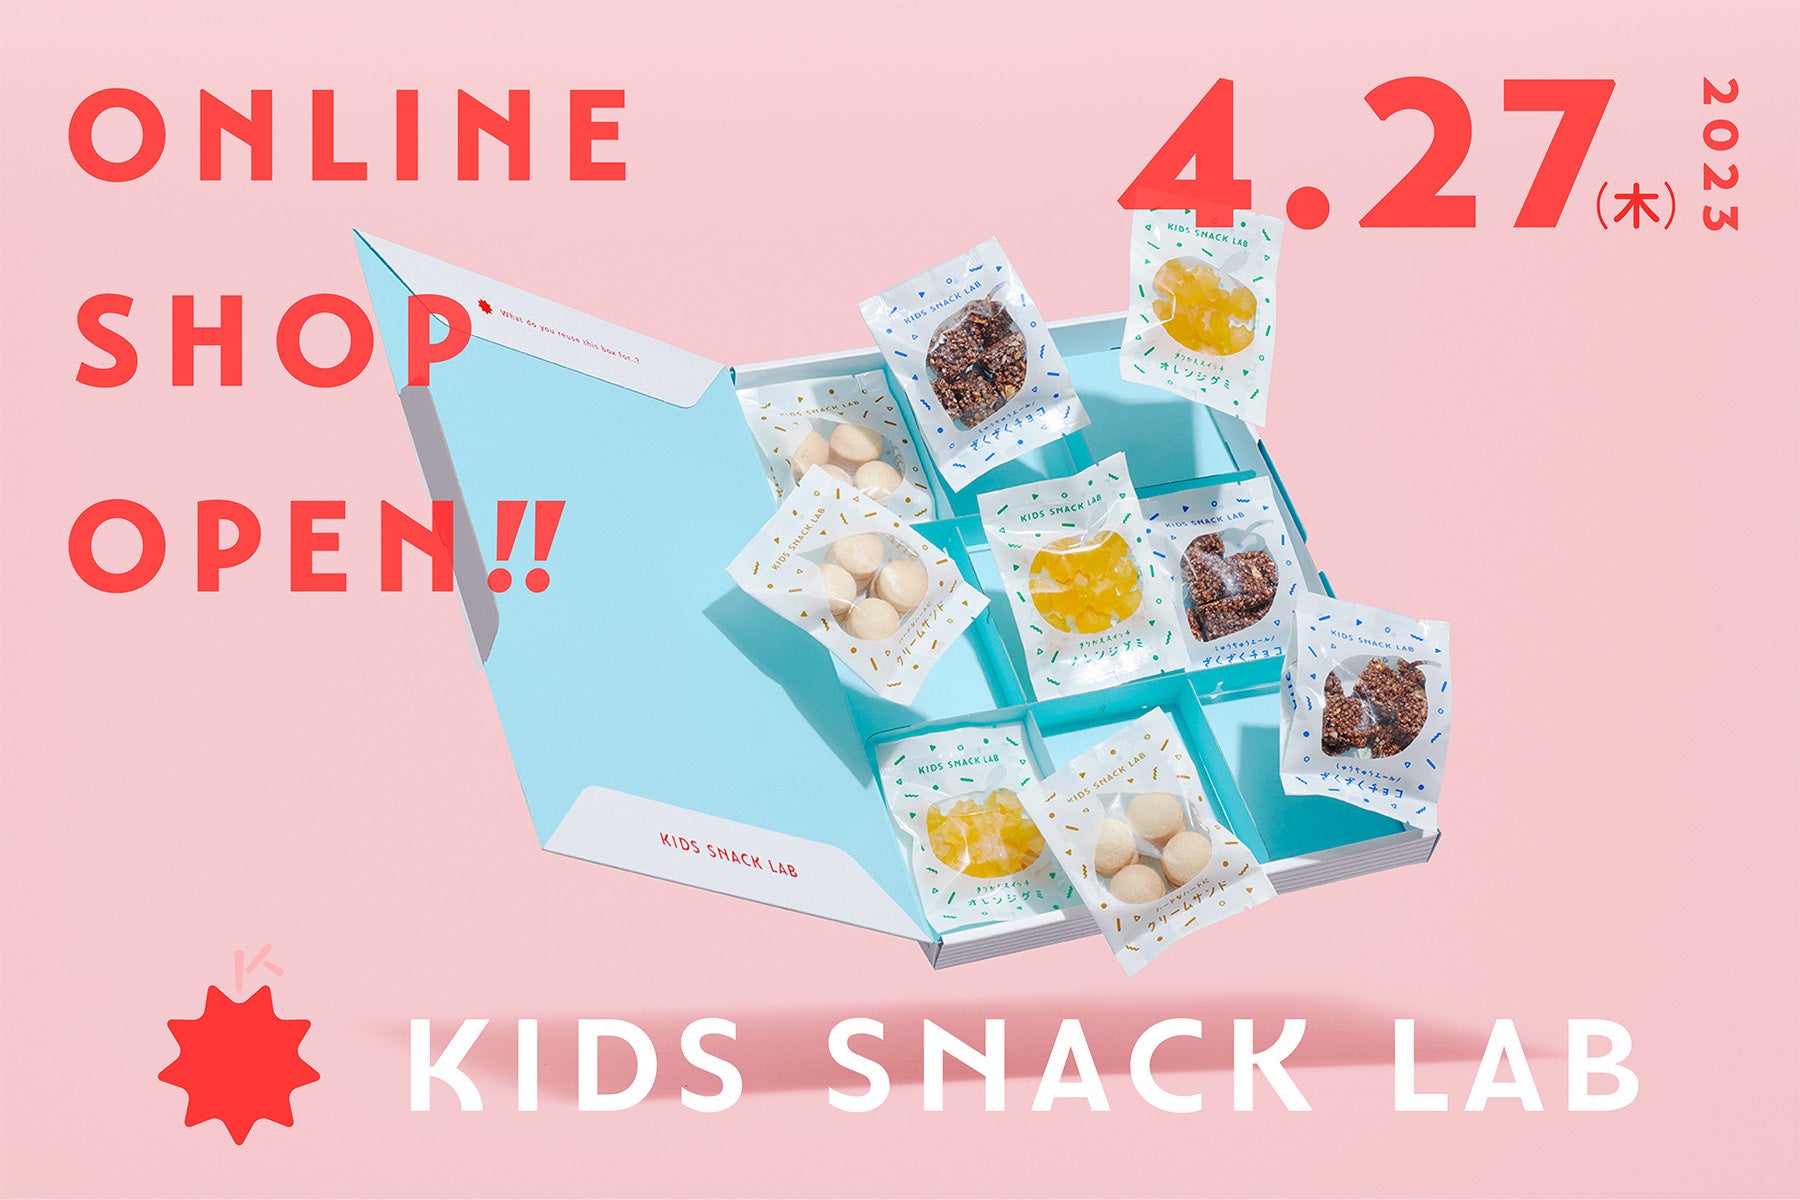 365日食べても体と心が喜ぶ！子どもの未来を育てる栄養機能お菓子のD2Cブランド「KIDS SNACK LAB」第一弾商品、公式サイトにて販売開始